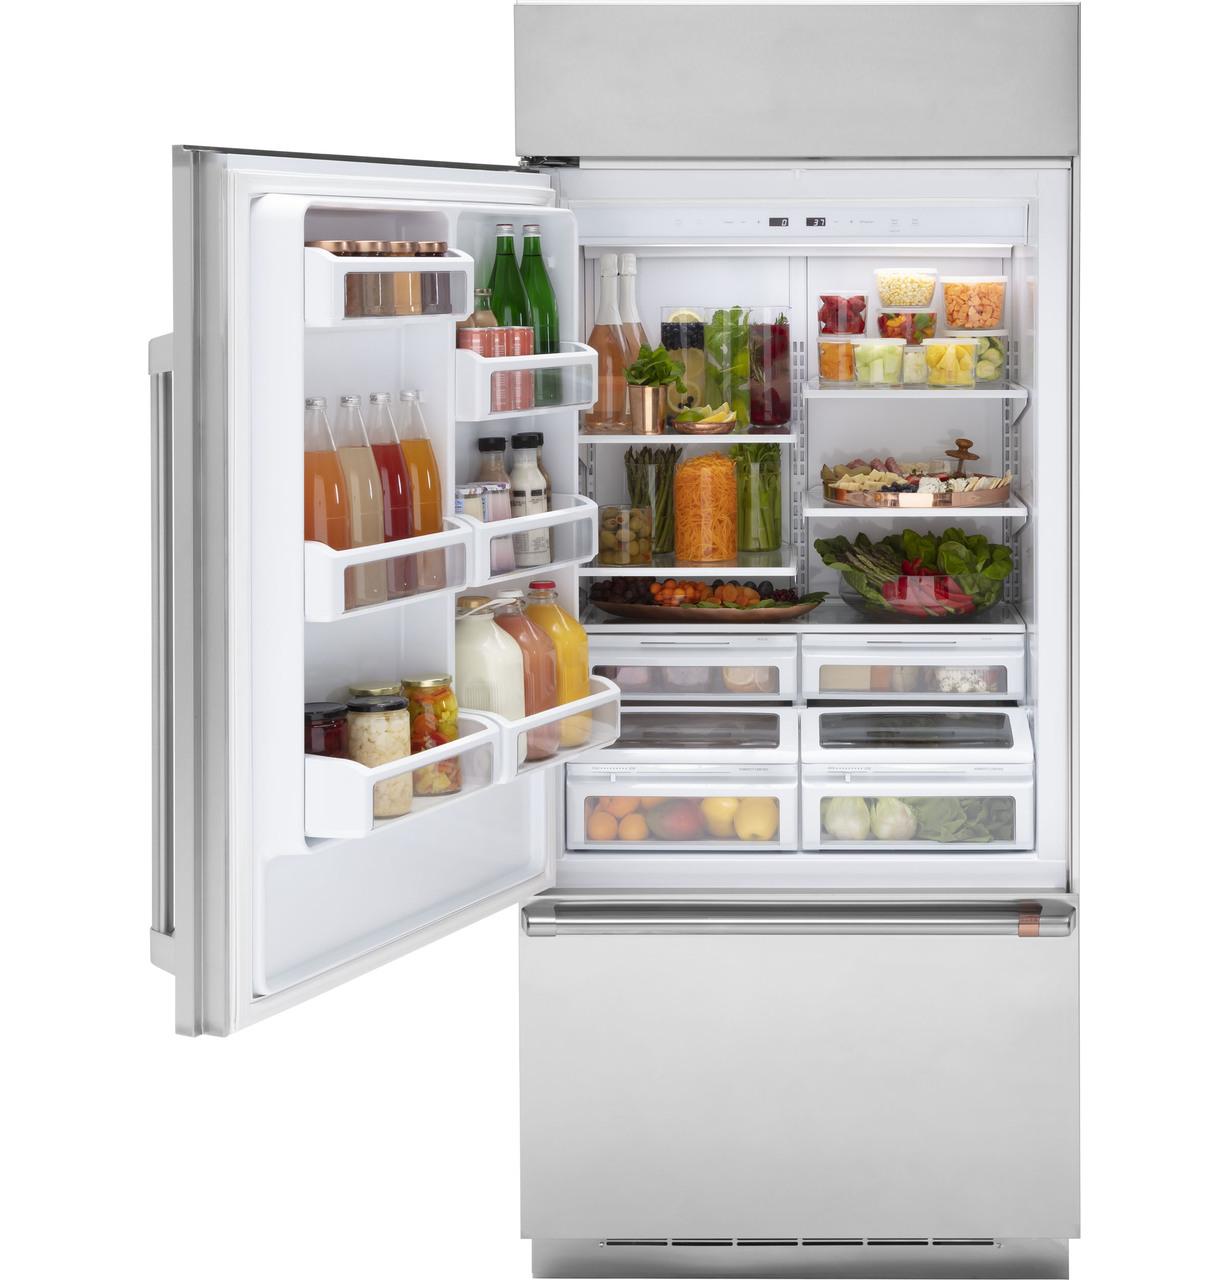 Cafe Caf(eback)™ 21.3 Cu. Ft. Built-In Bottom-Freezer Refrigerator